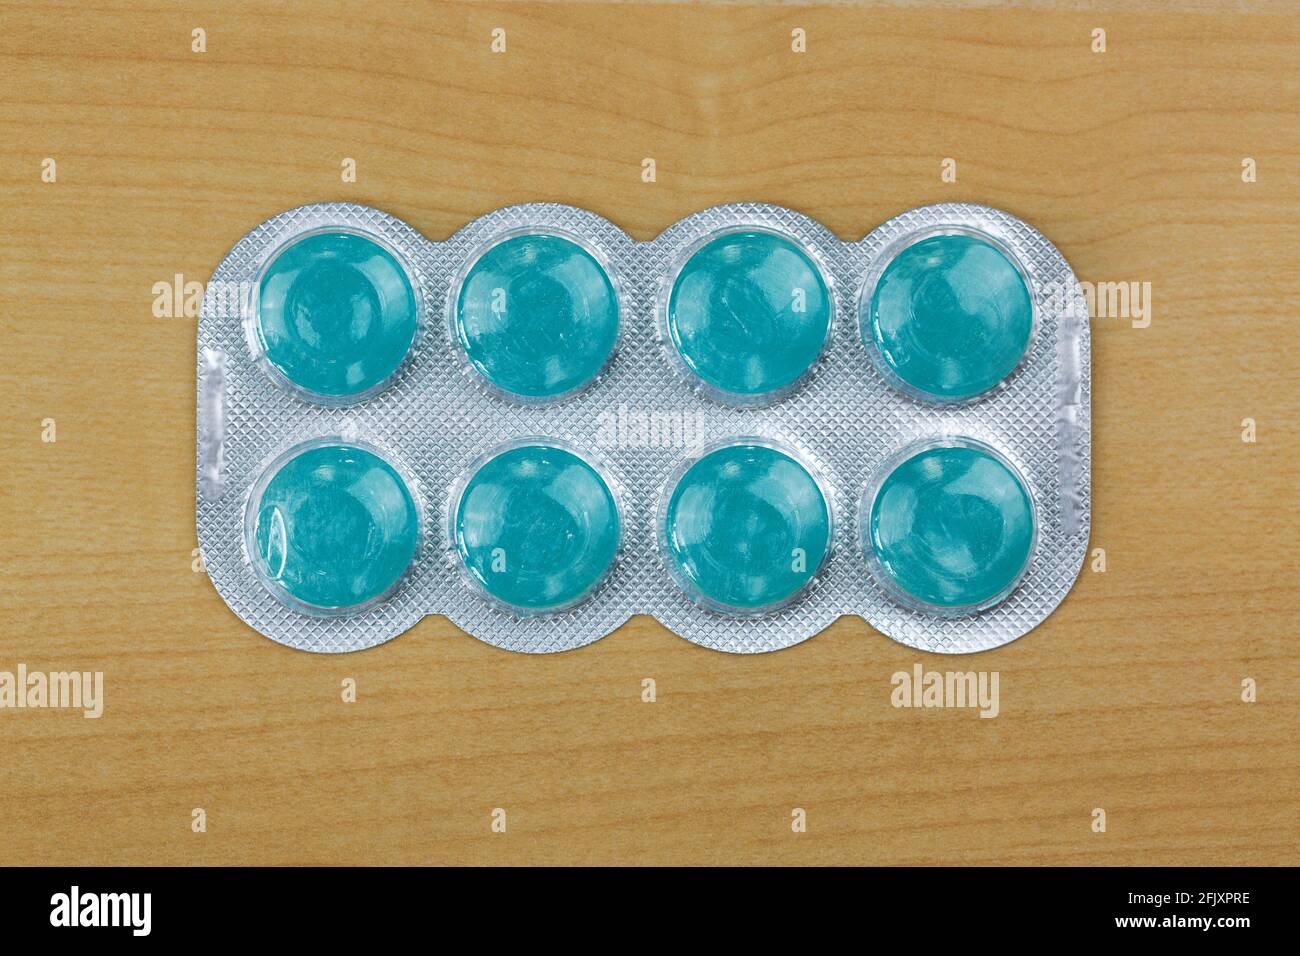 Blue lozenges médicament pour les maux de gorge graves avec 2 antiseptiques agents, anesthésique pour soulager efficacement la douleur, vue du dessus sur fond en bois Banque D'Images